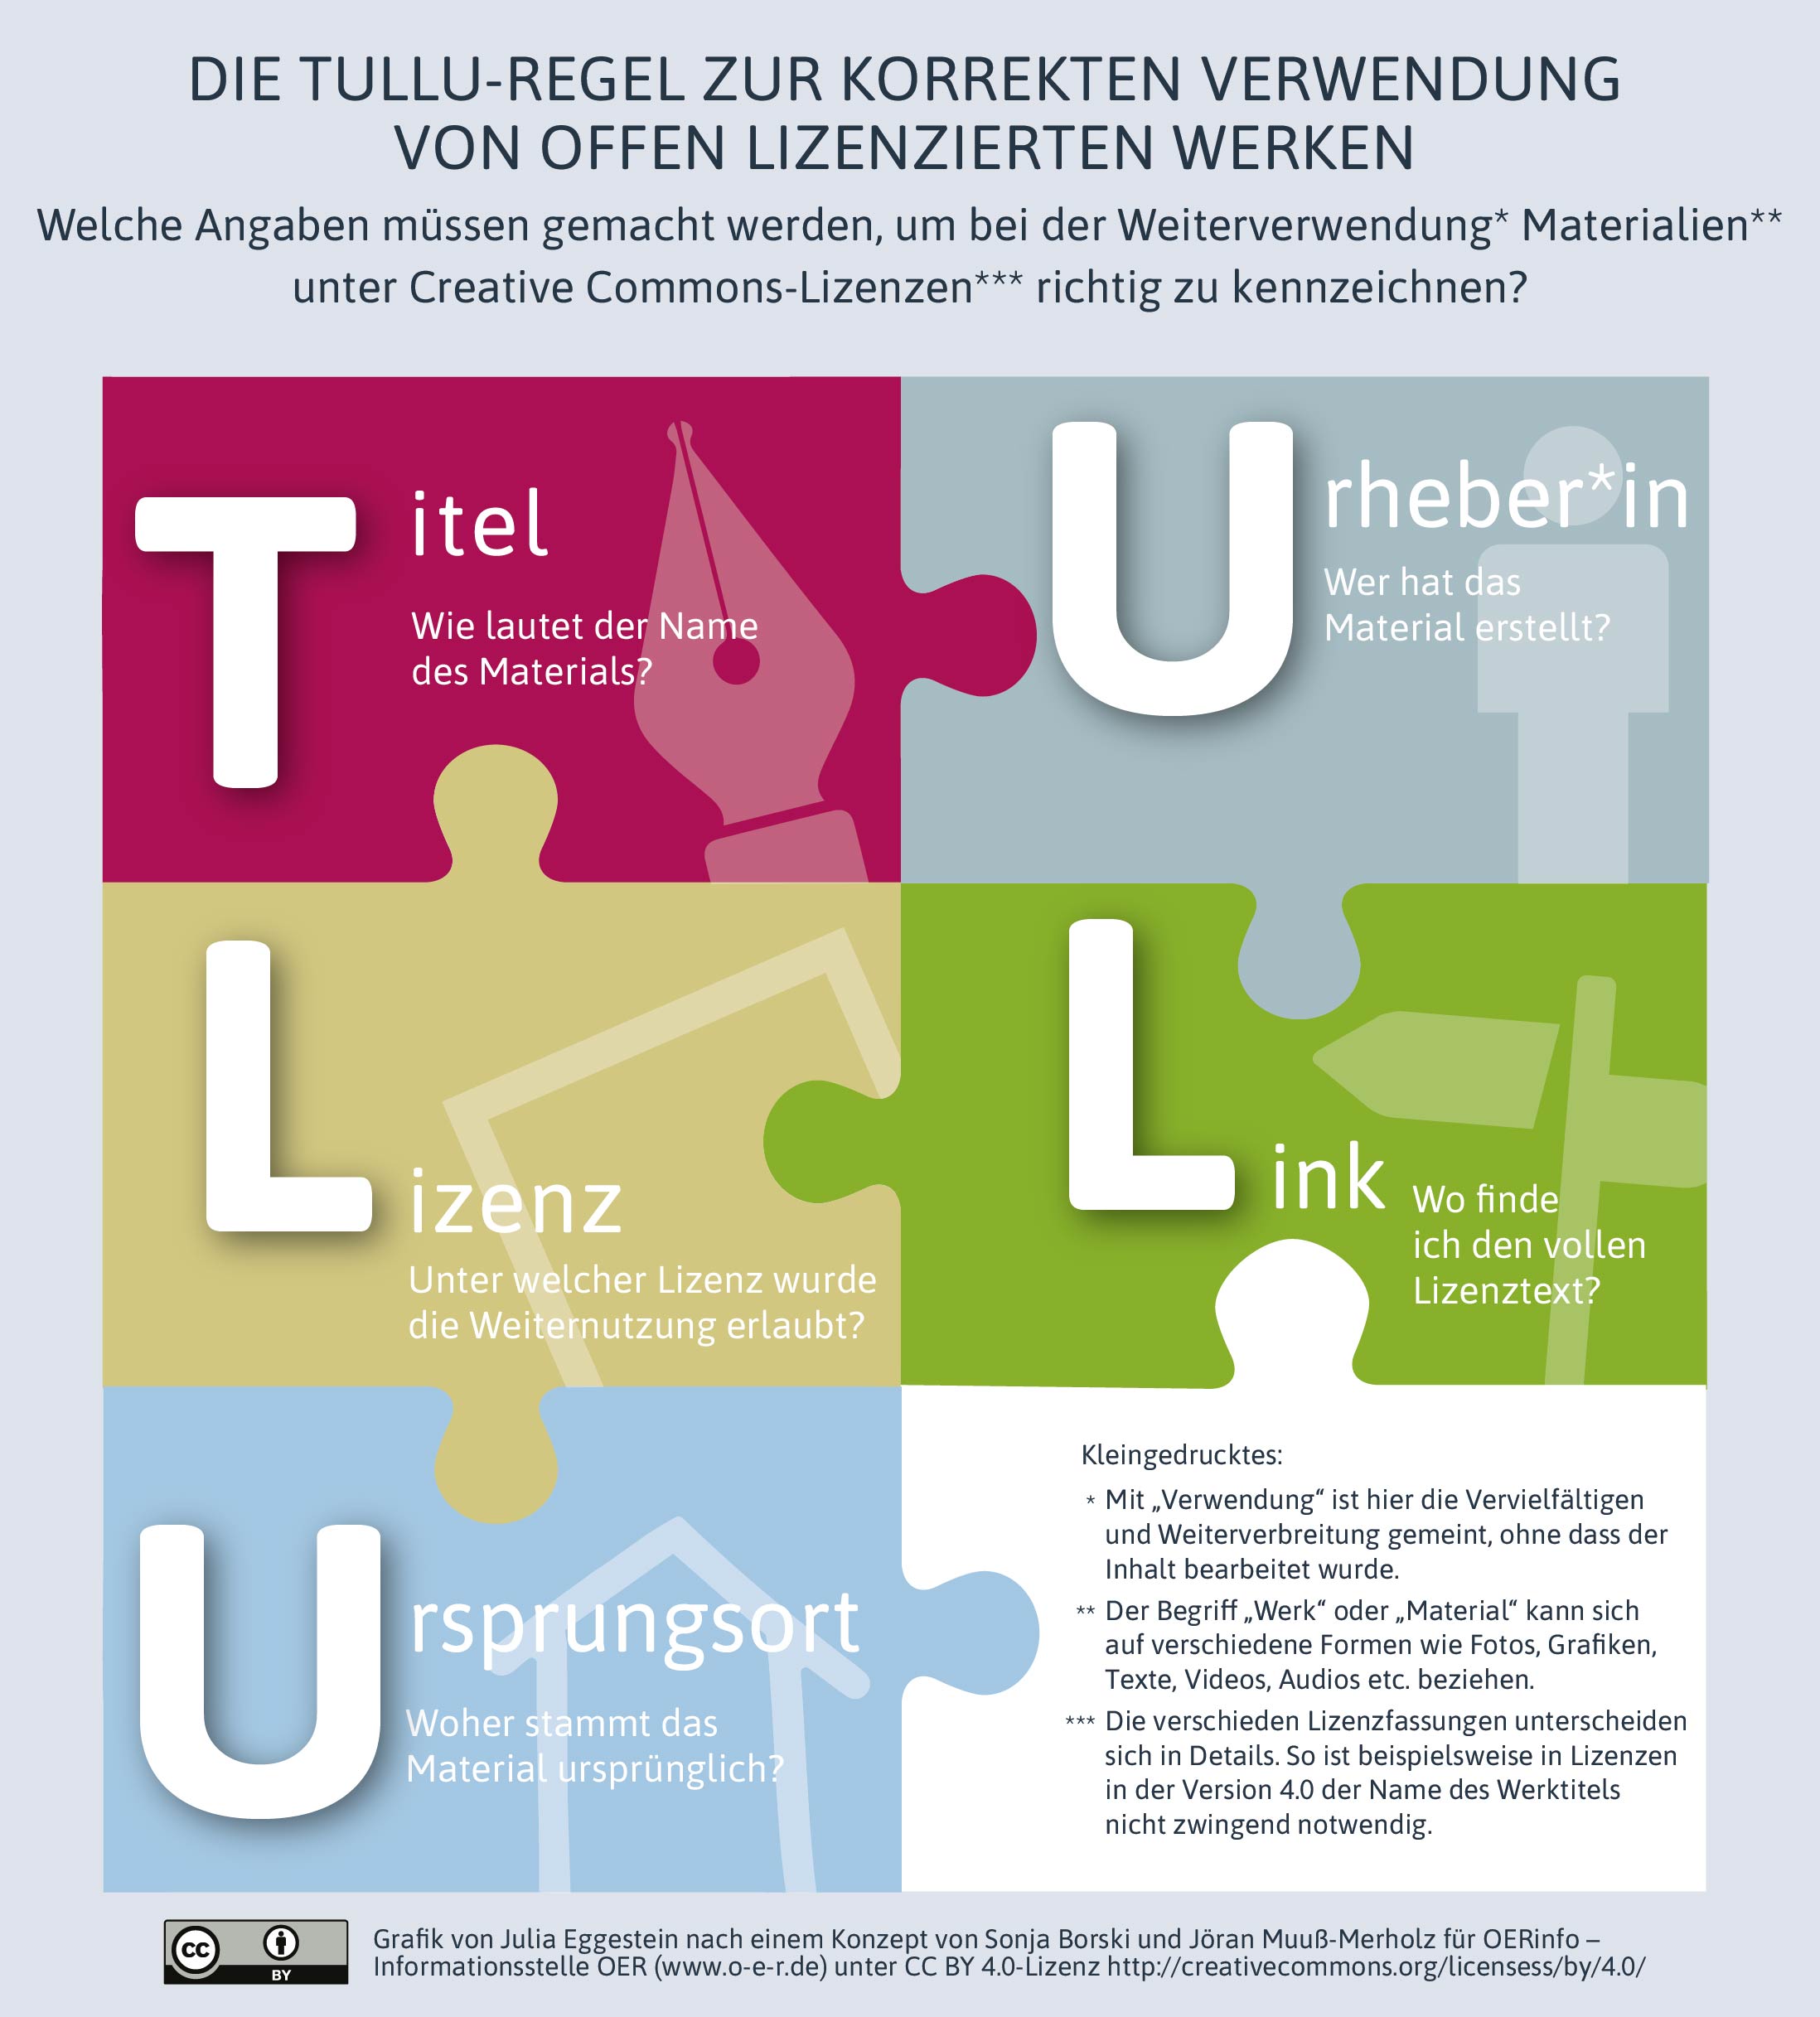 Infografik der TULLU-Regel